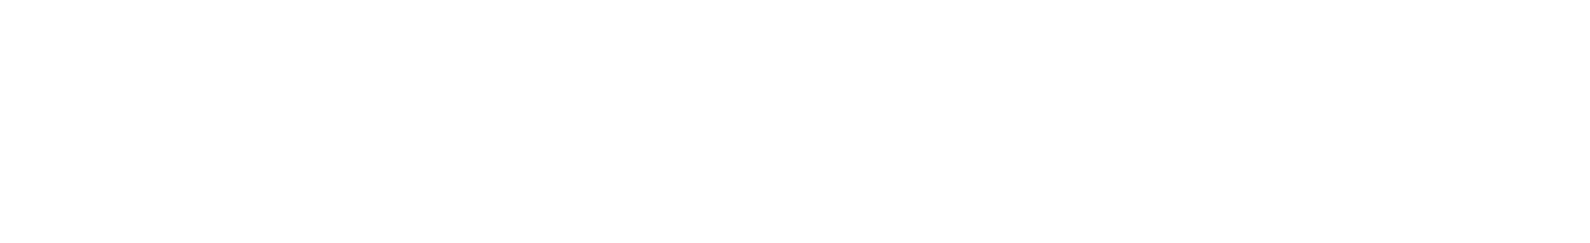 Blackbaud logo large for dark backgrounds (transparent PNG)